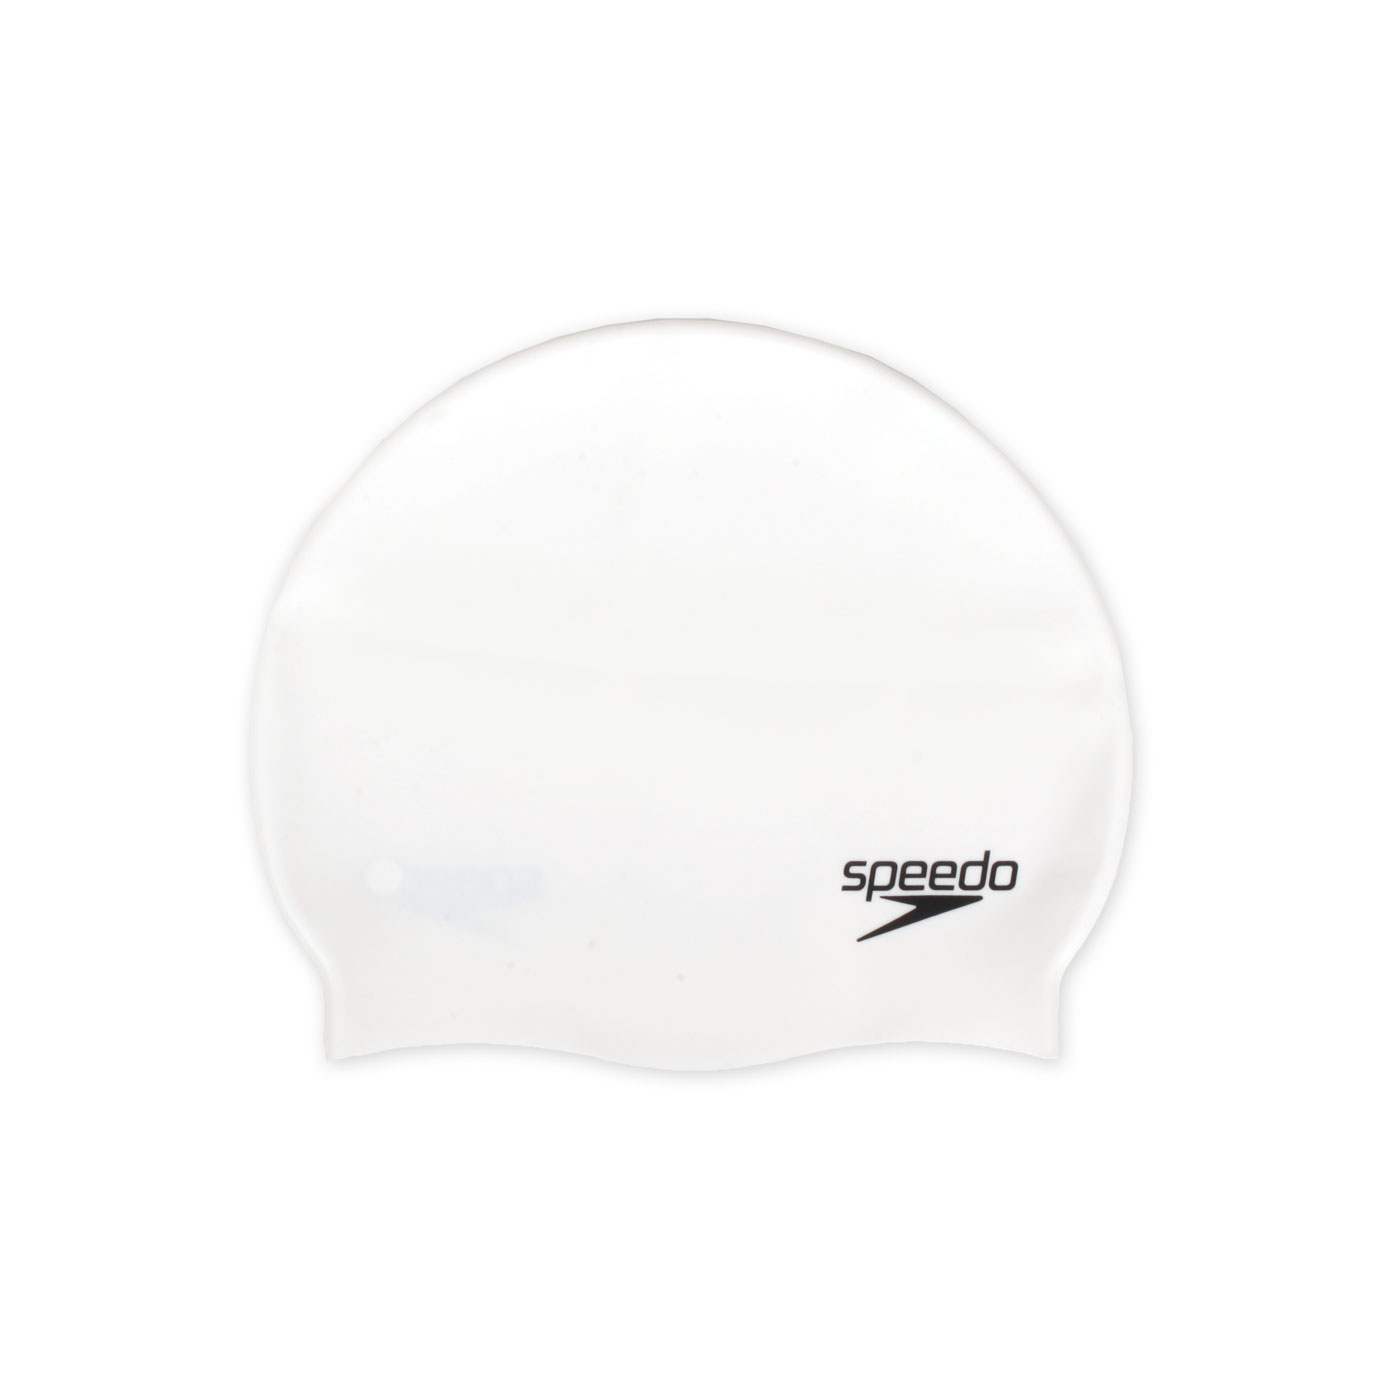 SPEEDO 成人矽膠泳帽  SD8709910001 - 白黑